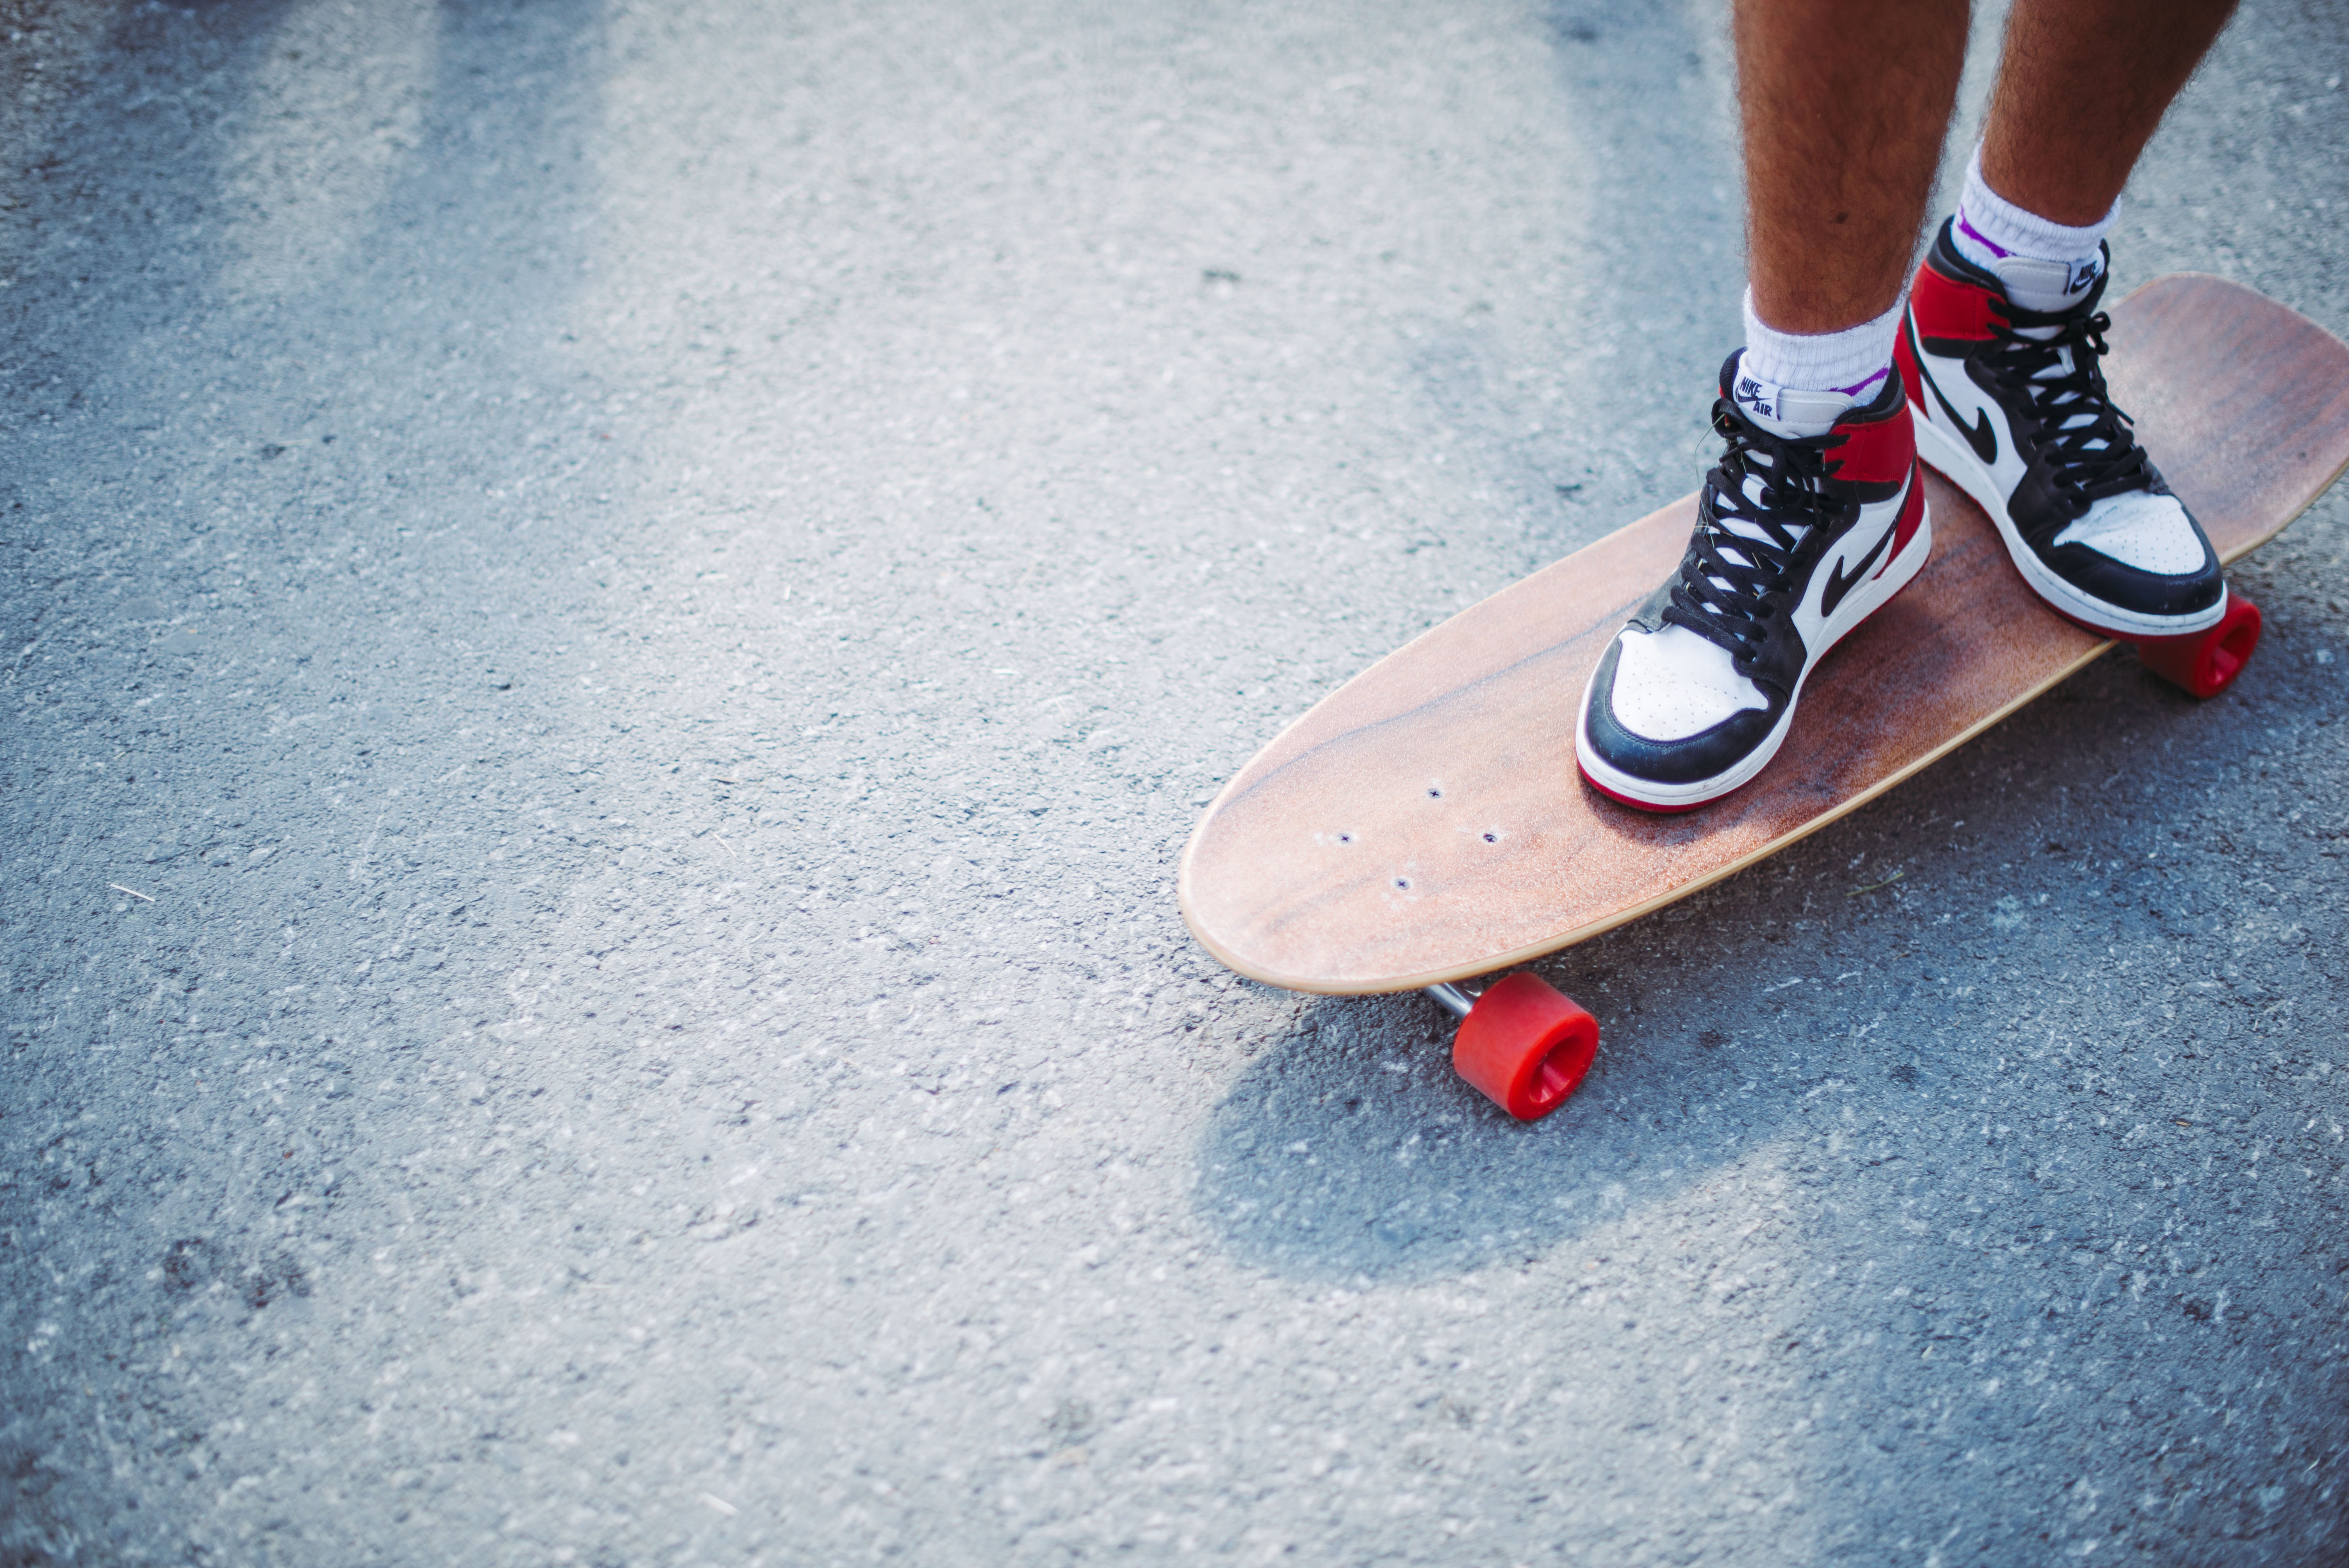 skateboard, miscellanea, miscellaneous, legs, sneakers, asphalt, longboard